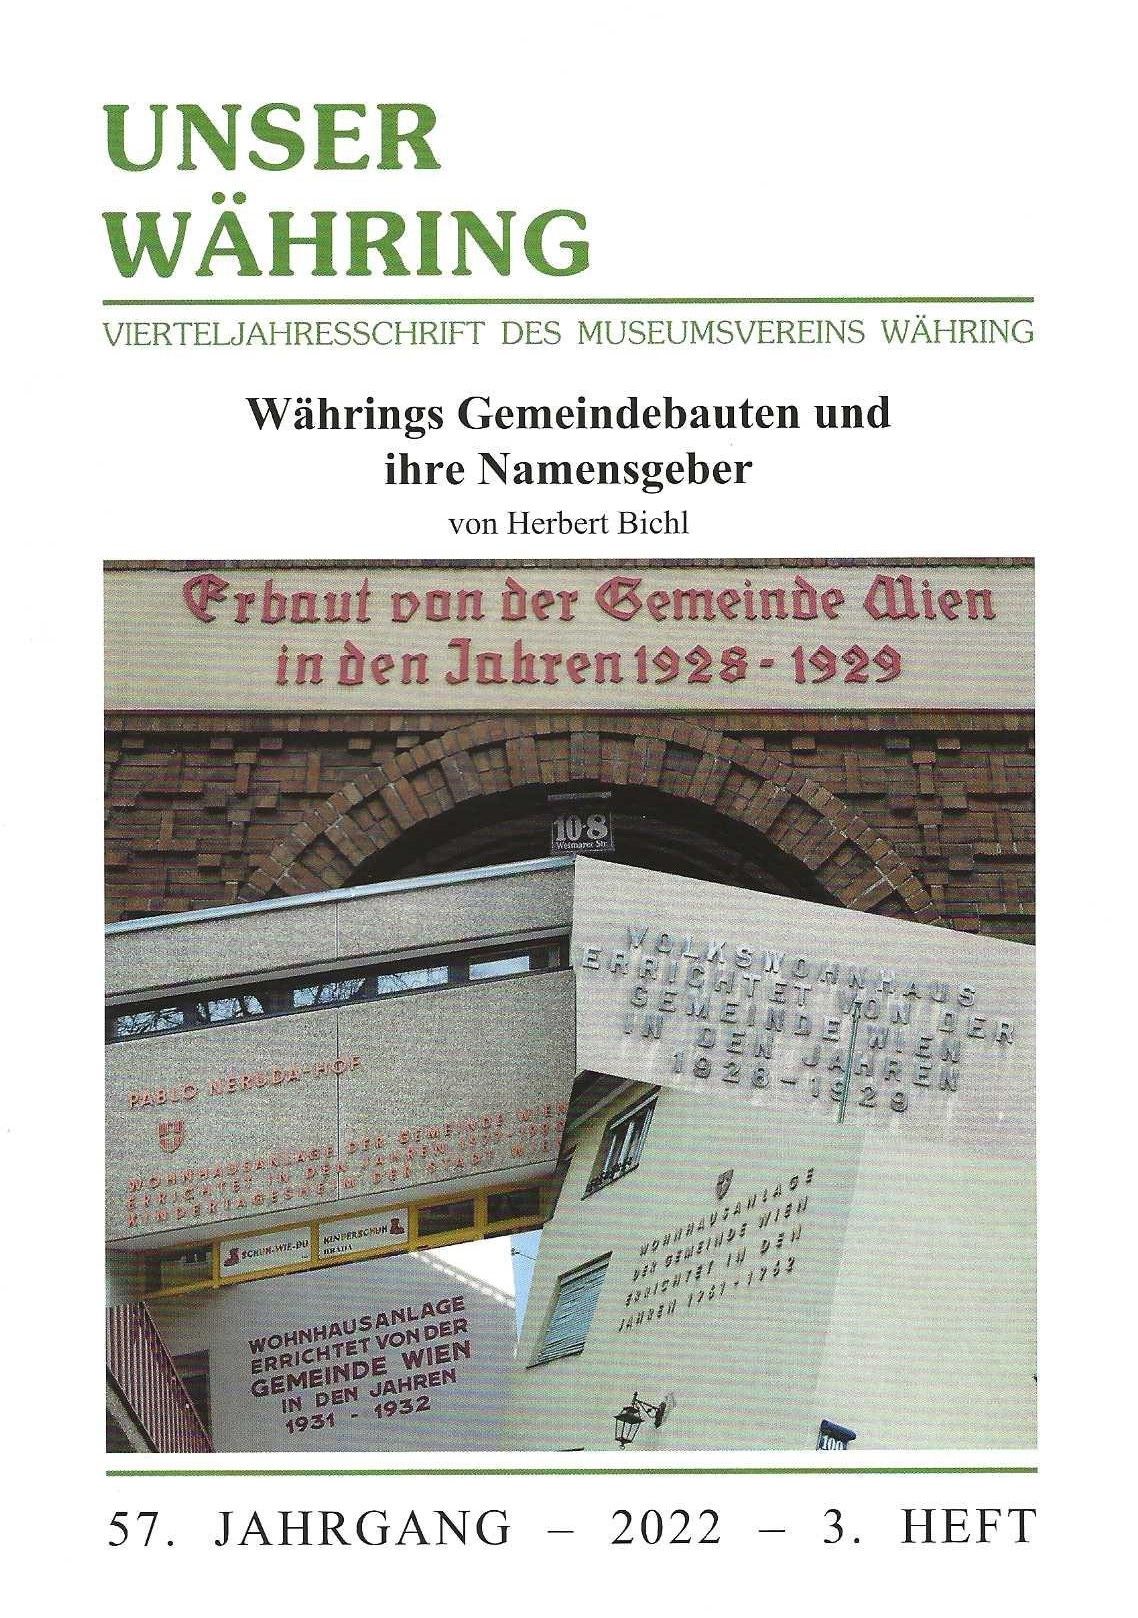 Publikation: Währings Gemeindebauten und ihre Namensgeber, Bezirksmuseum Währing